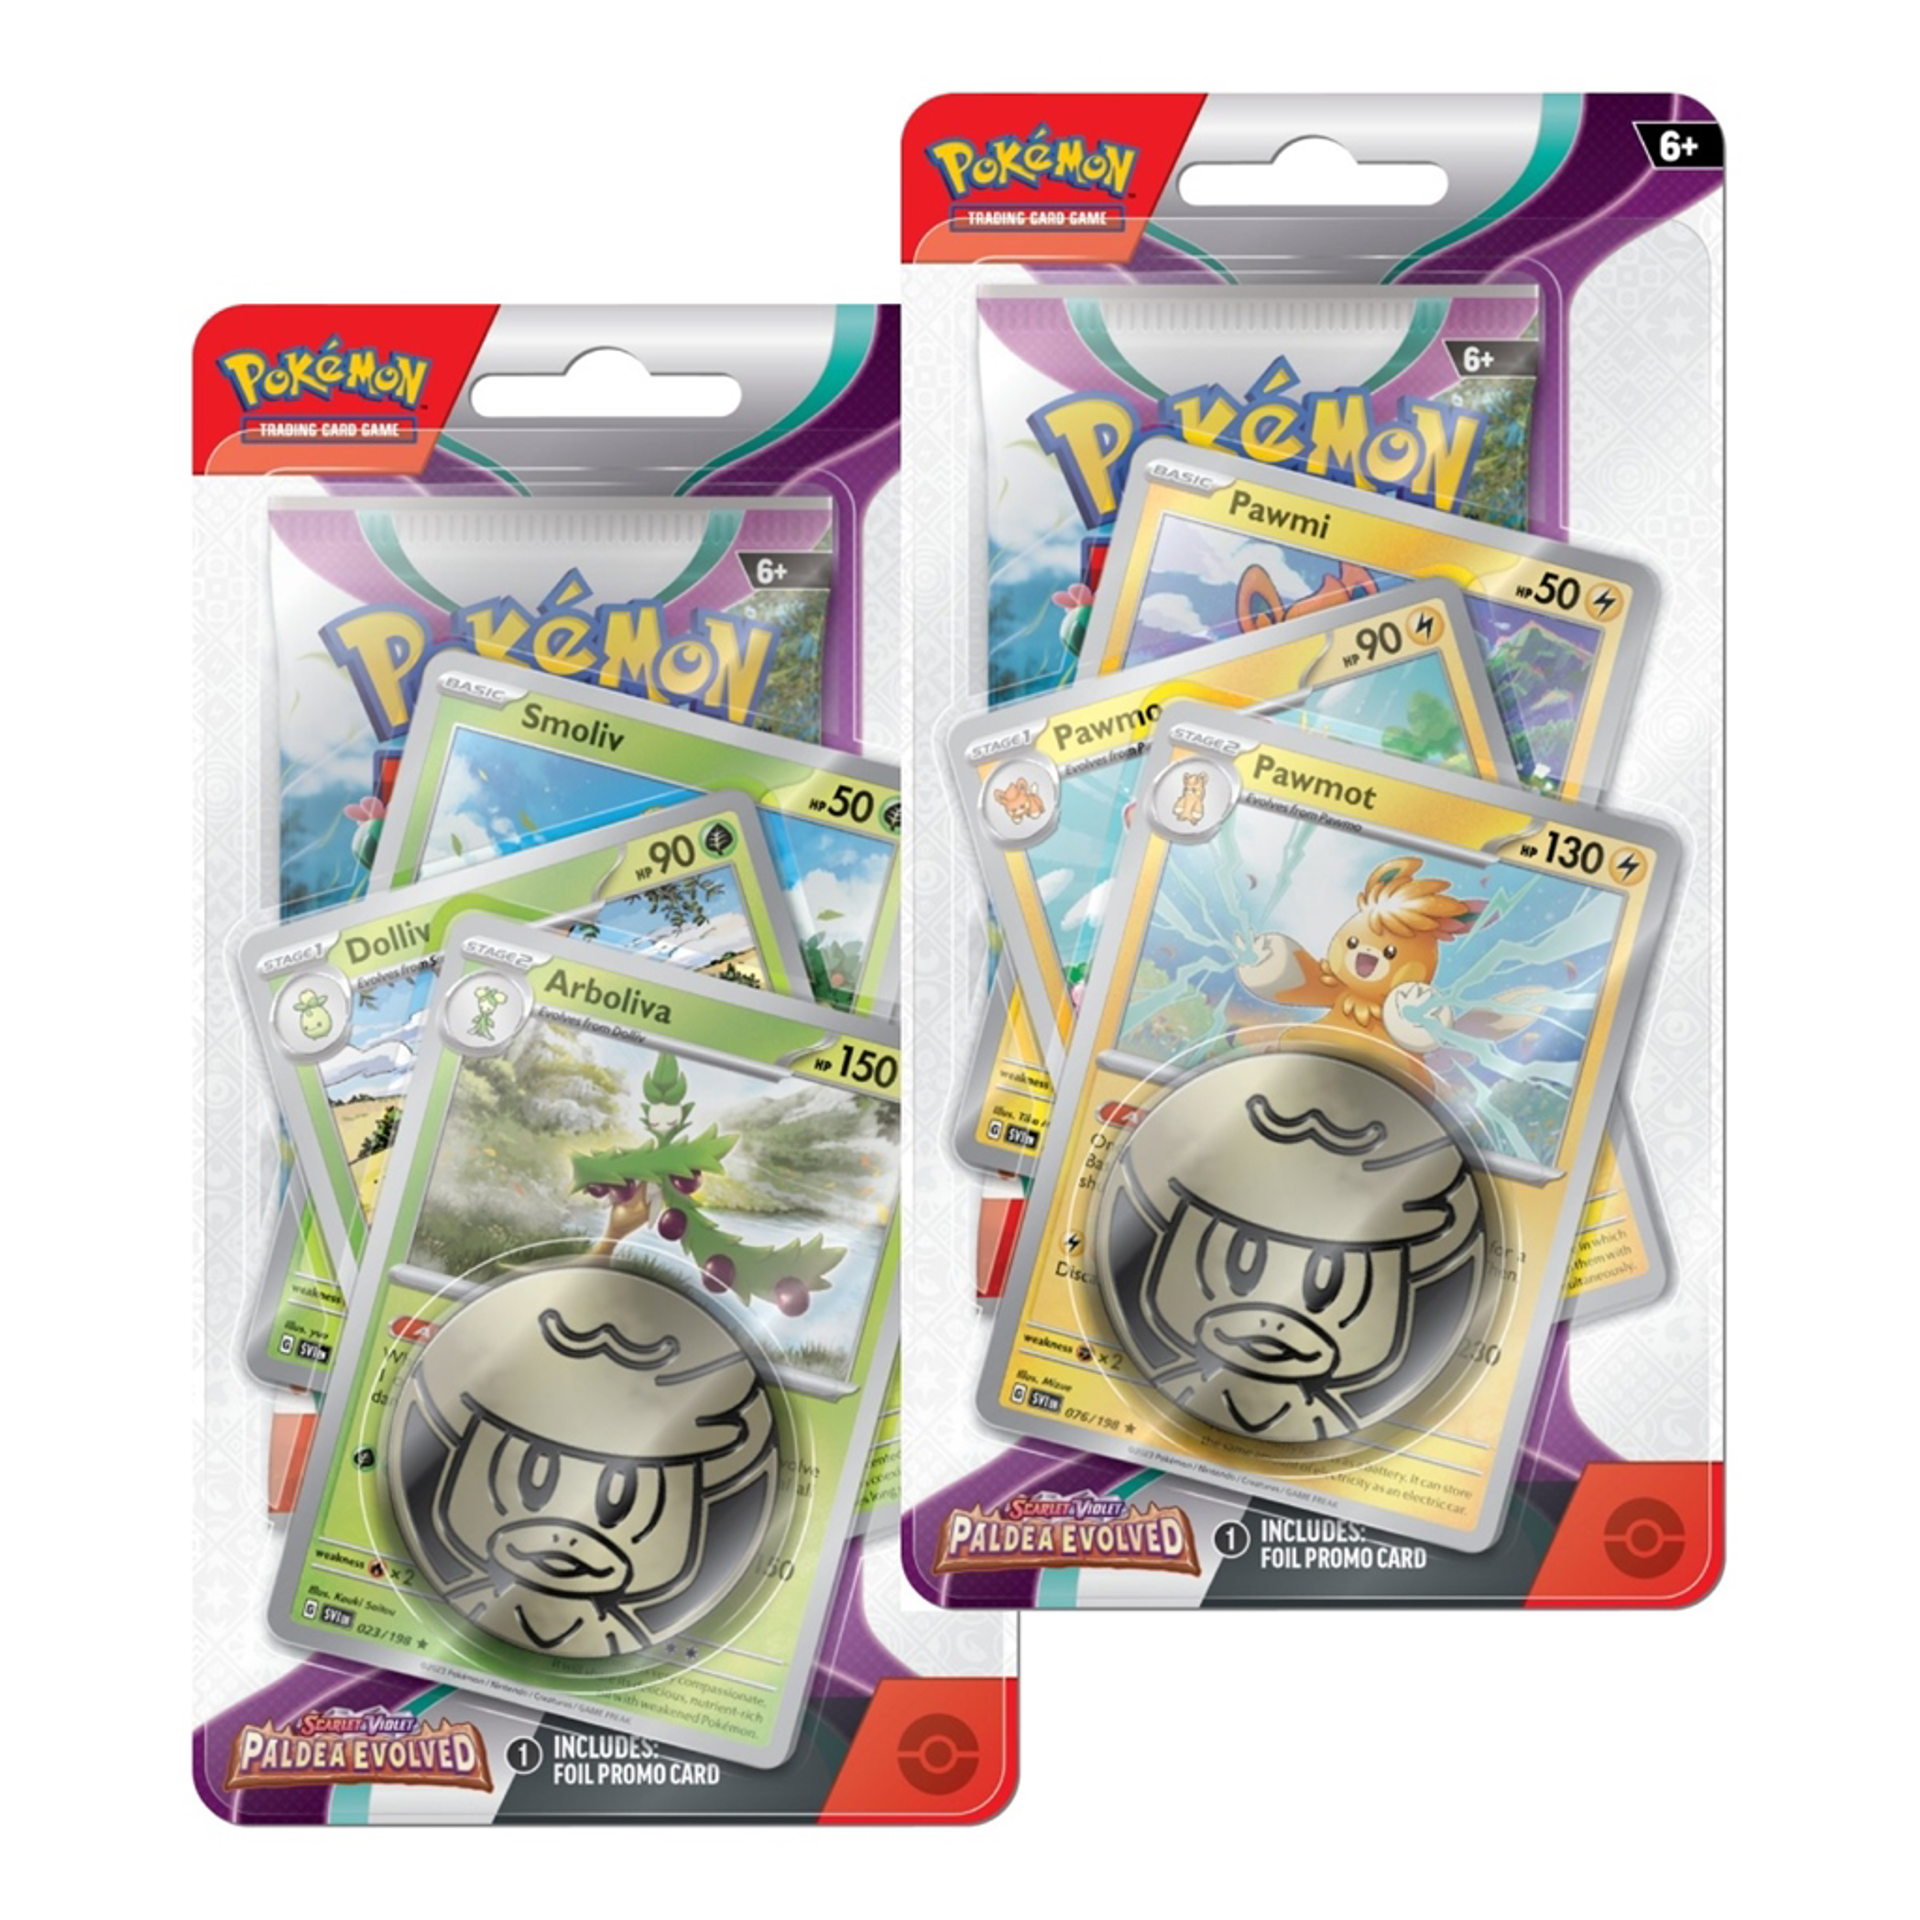 Pokémon JCC - Écarlate et Violet - Pack d'accès Premium Blister Évolutions à Paldea Pohmarmotte ou Arboliva (1x blister aléatoire)